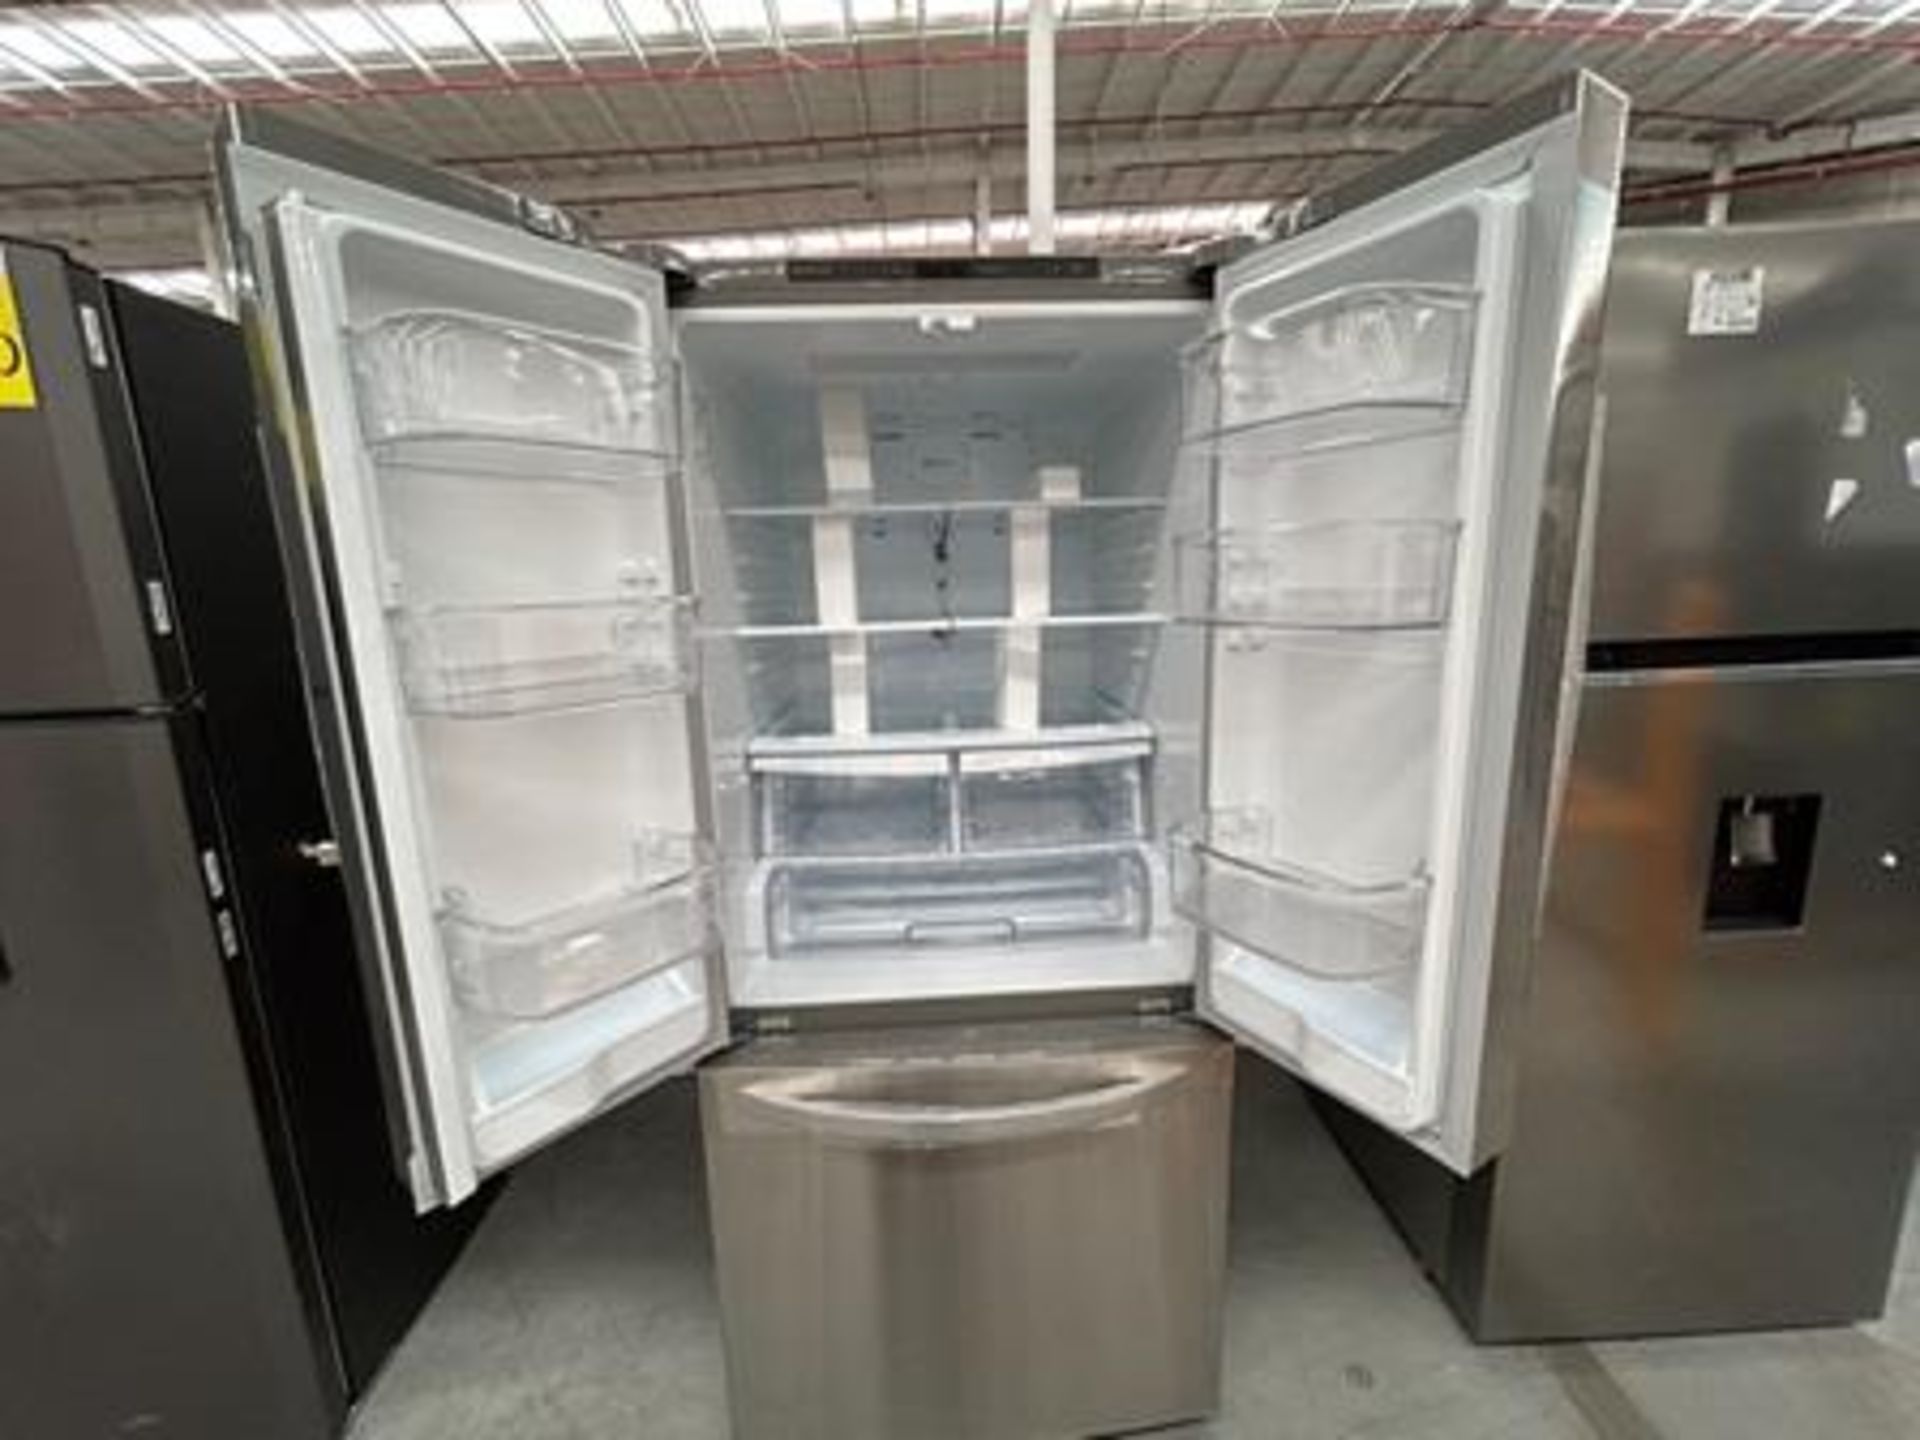 1 refrigerador Marca LG, Modelo GF22BGSK, Serie 3J954 Color GRIS (Equipo de devolución) - Image 4 of 5